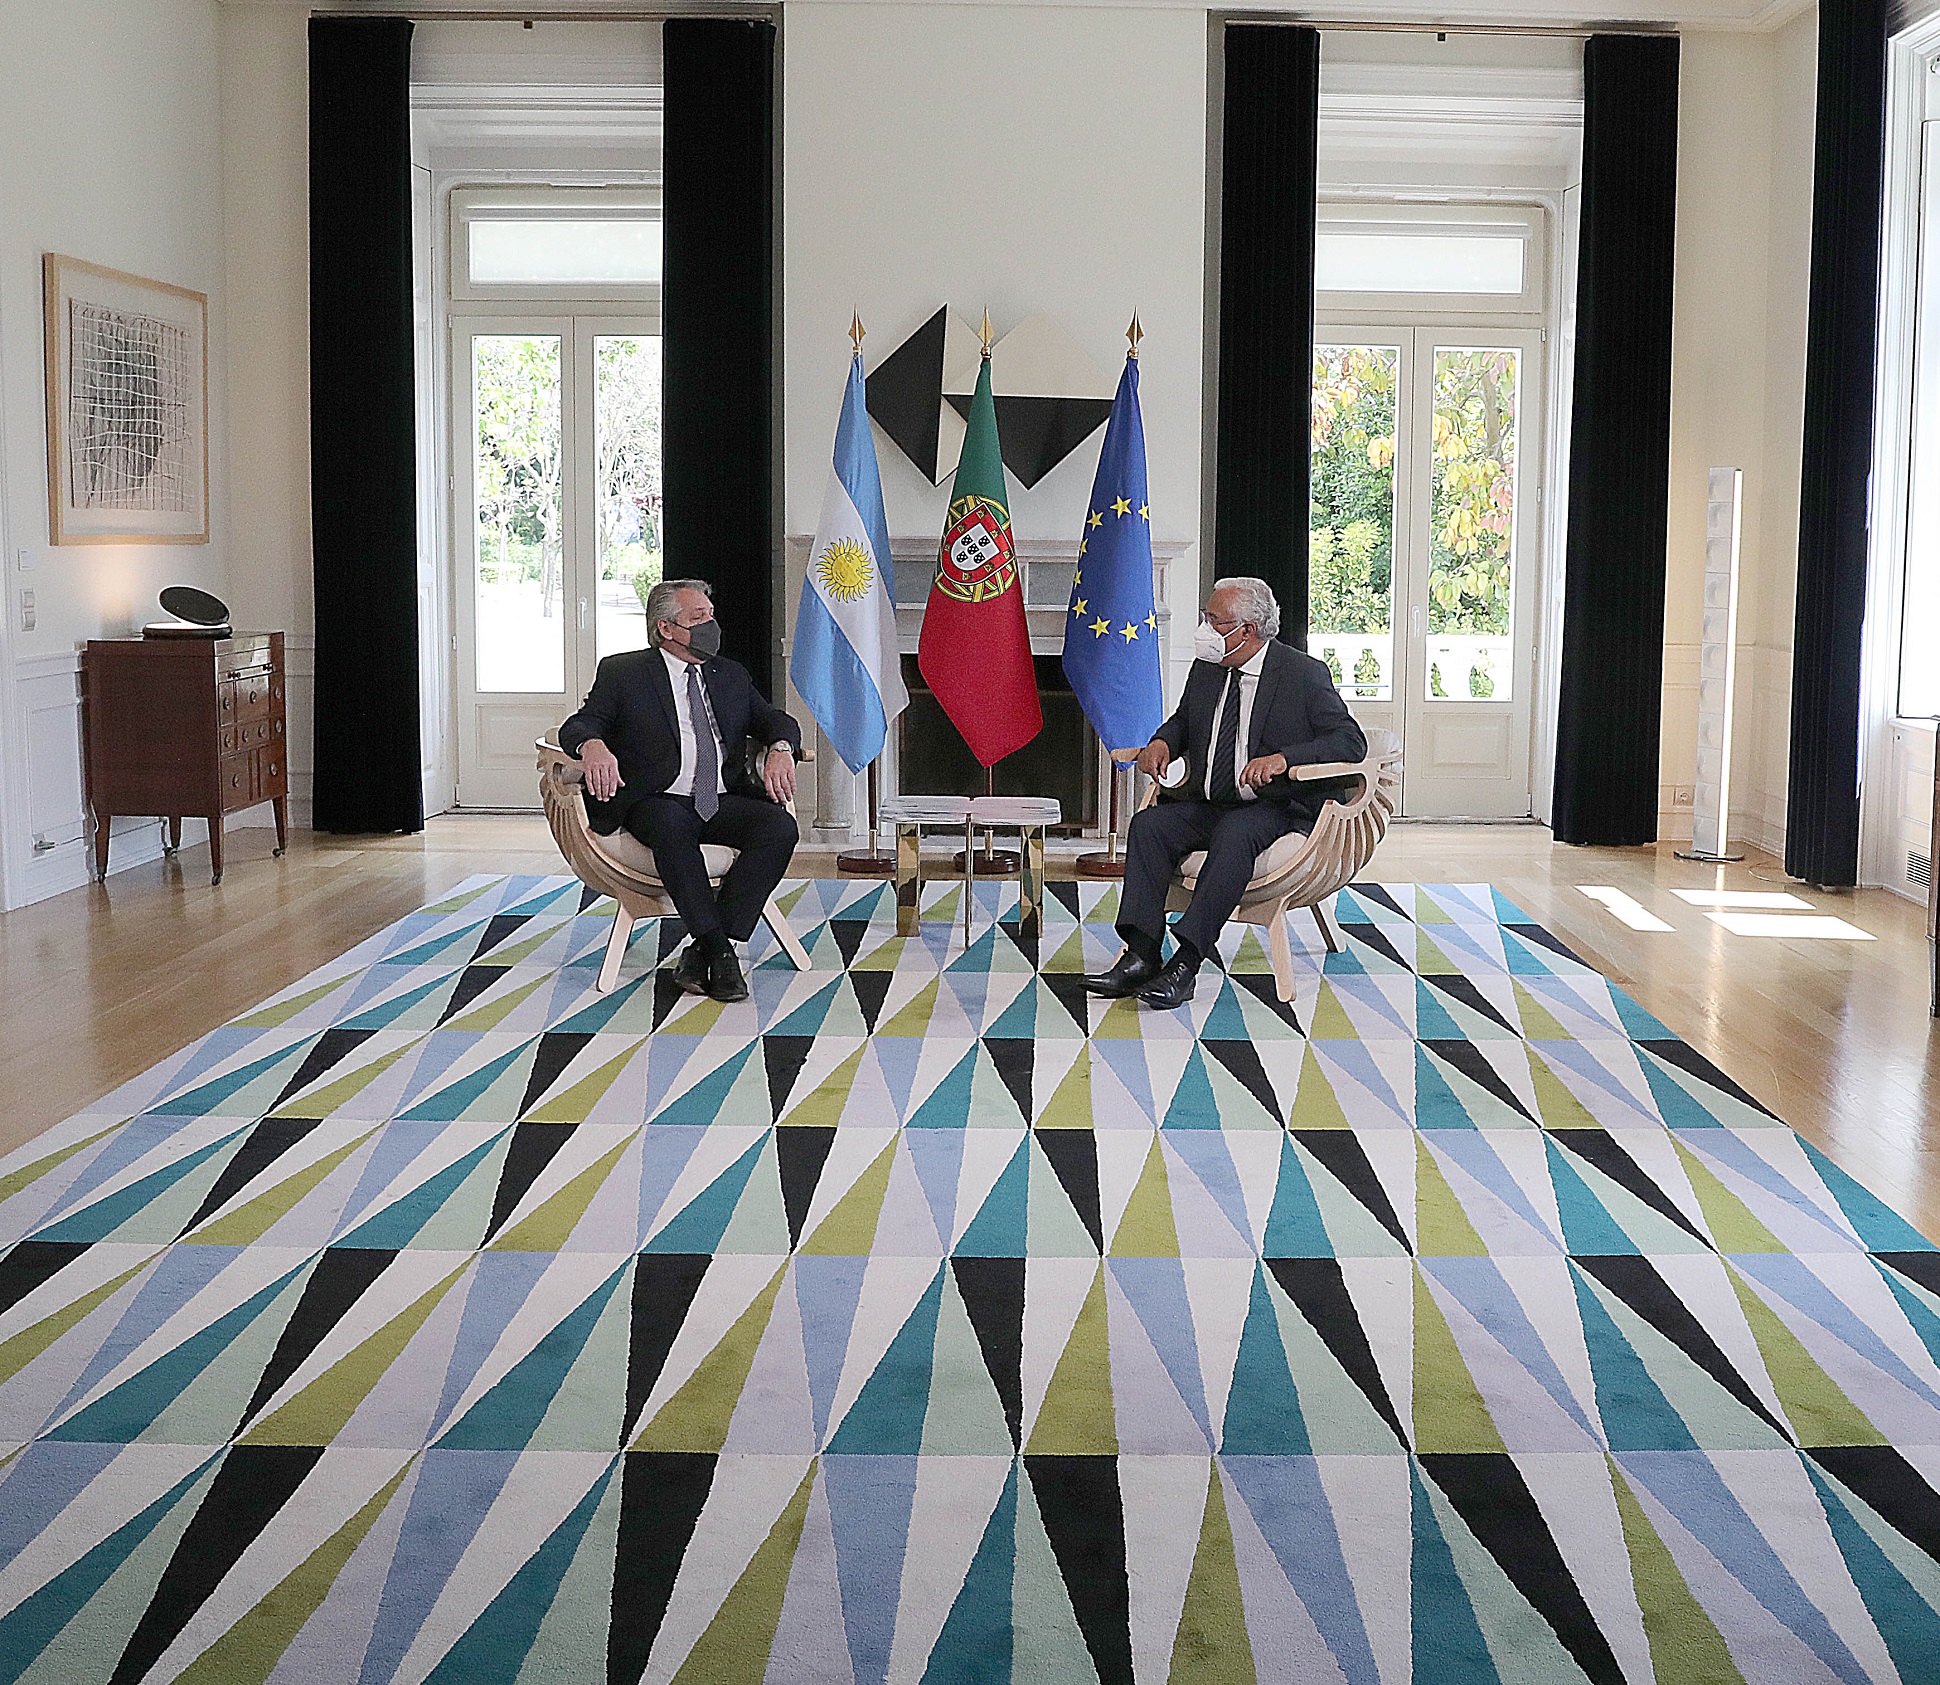 El primer ministro de Portugal expresó su apoyo a la posición de la Argentina en las negociaciones con el FMI